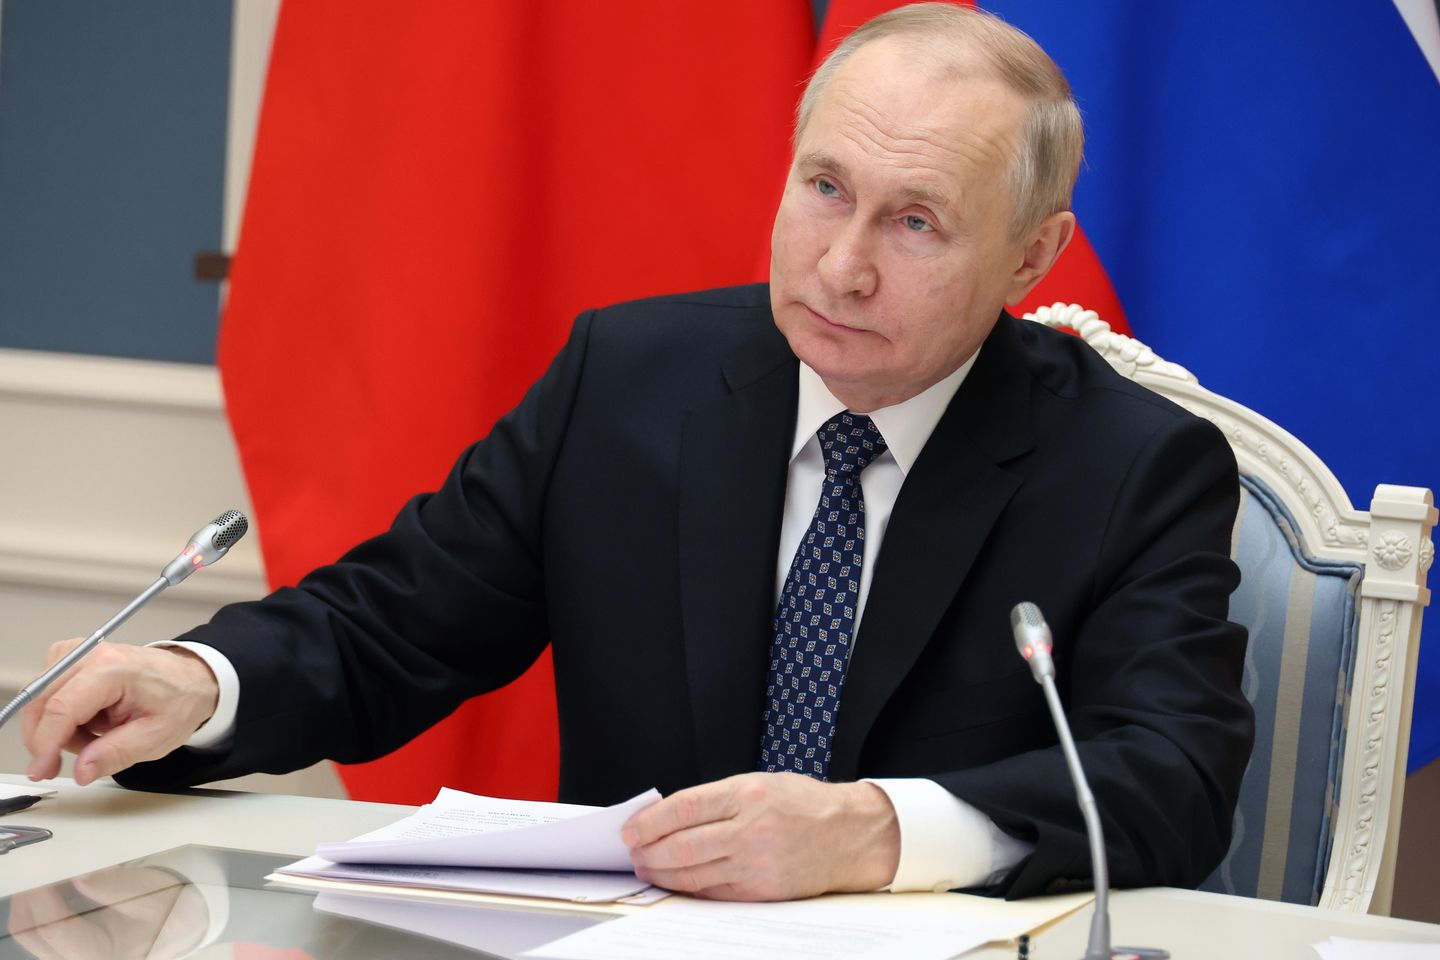 Pada Tahun Baru, Vladimir Putin mengecam Barat karena kemunafikan, agresi